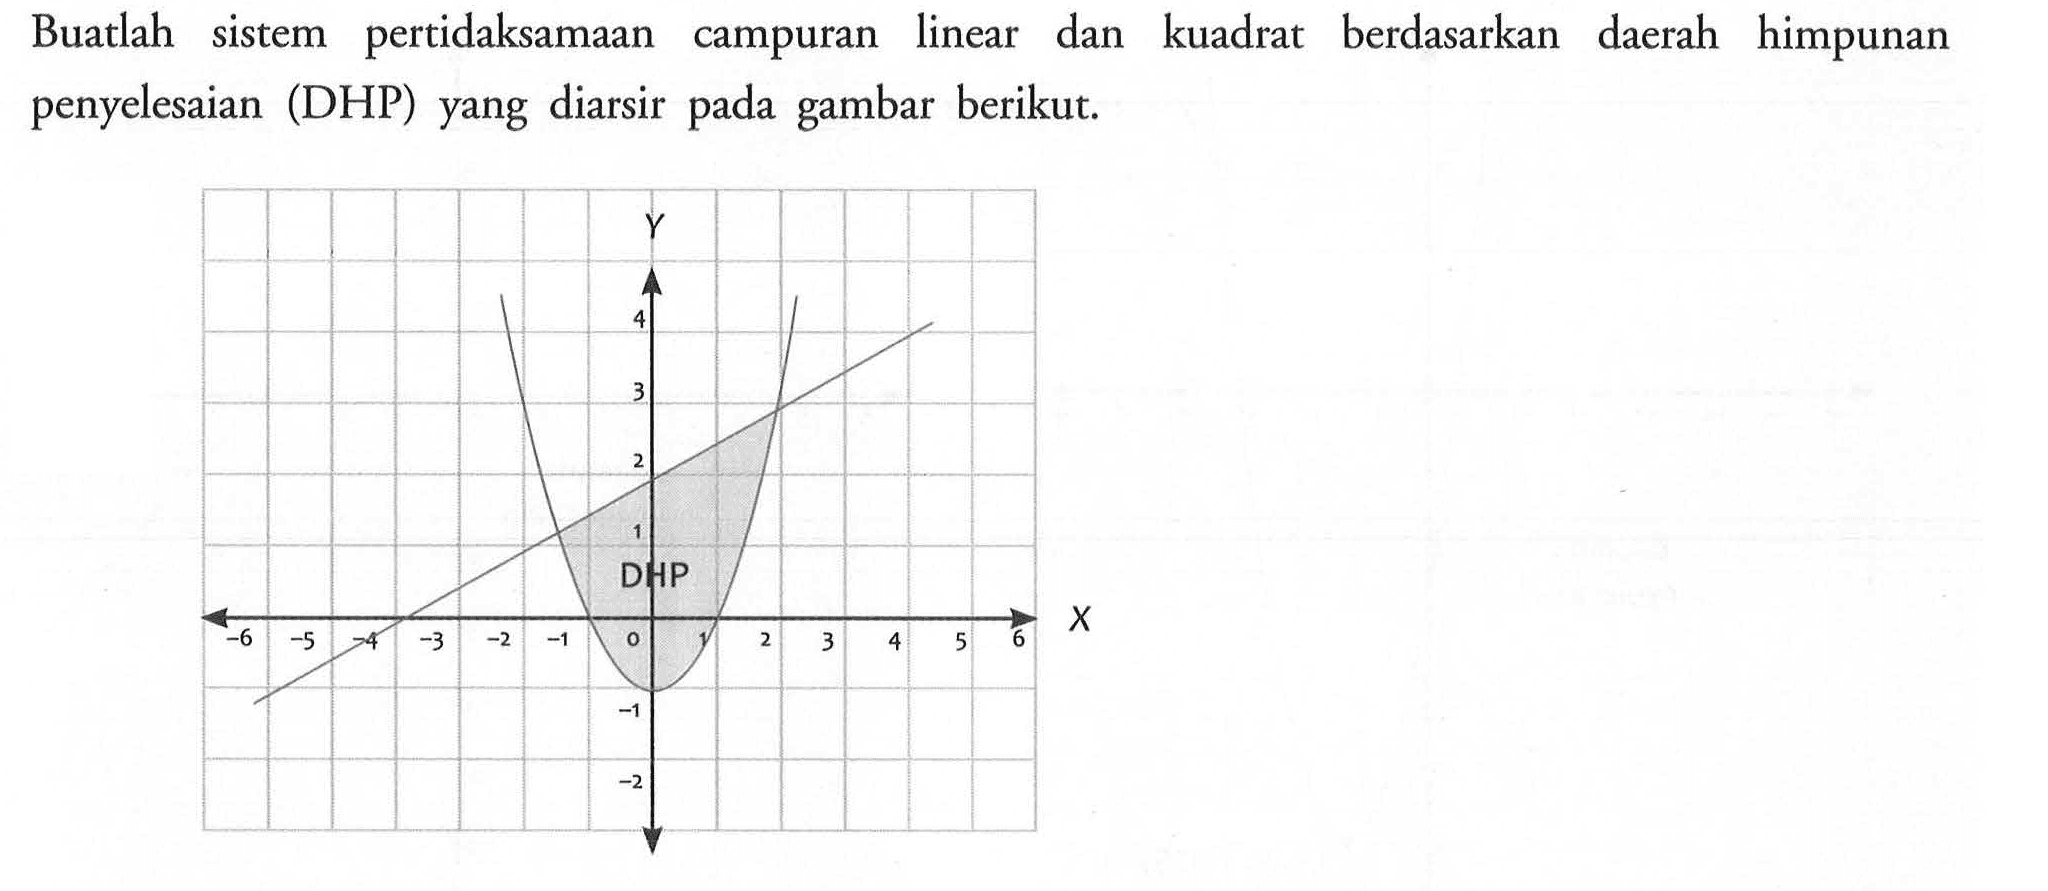 Buatlah pertidaksamaan linear sistem dan kuadrat berdasarkan daerah himpunan campuran penyelesaian (DHP) yang diarsir pada gambar berikut: